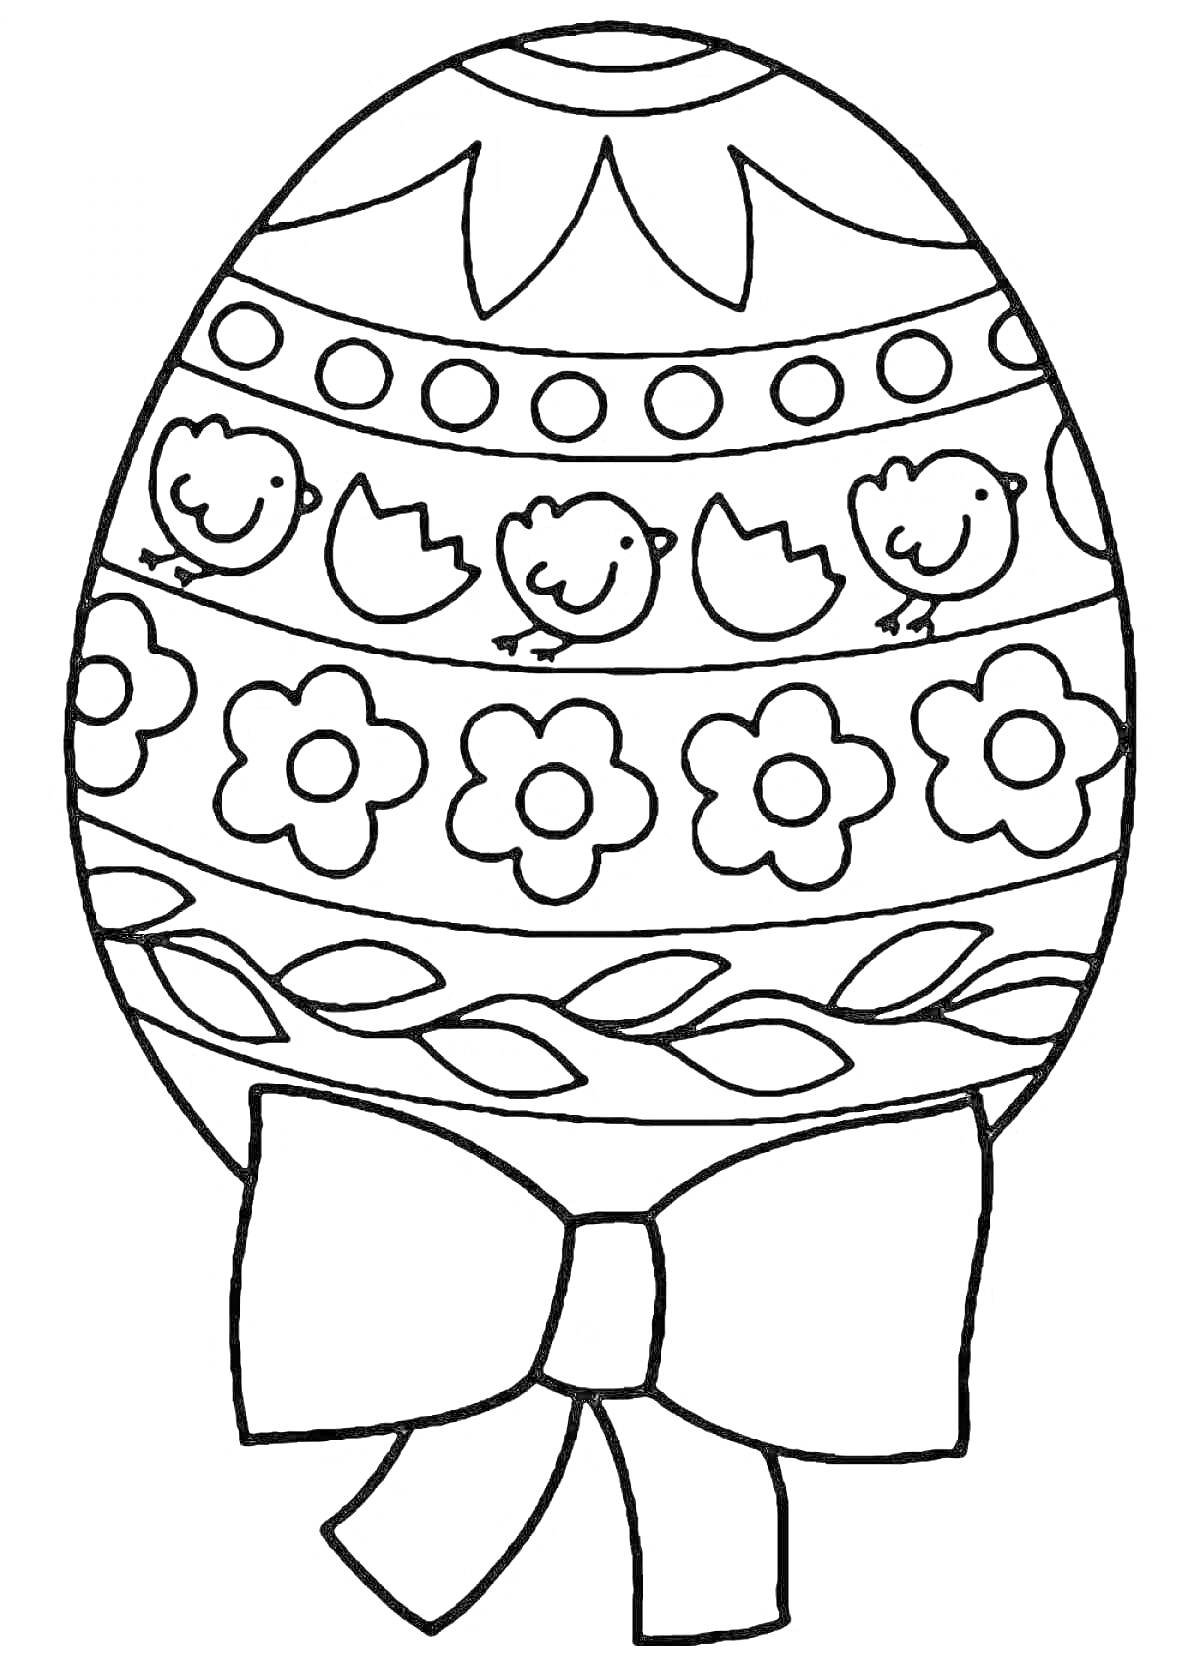 Раскраска Пасхальное яйцо с узорами: цыплята, цветы, листочки и бант